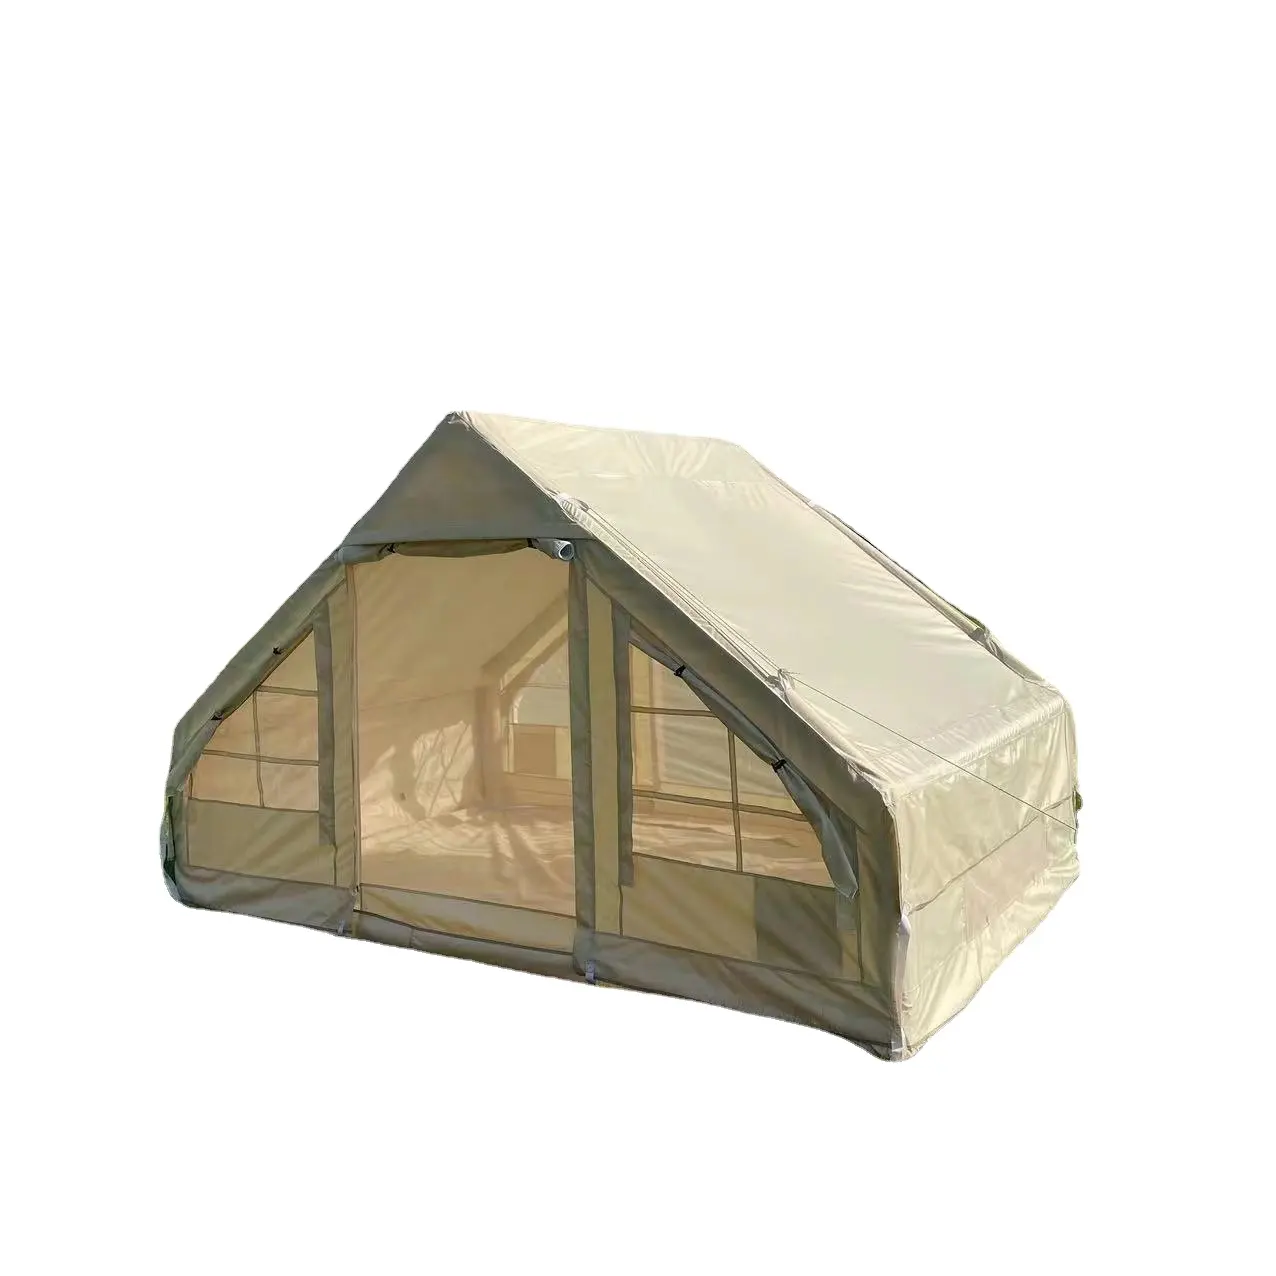 Lüks şişme çadır 4 kişi için geçerli aile kamp etkinlikleri kabin tipi şişme kamp çadırı